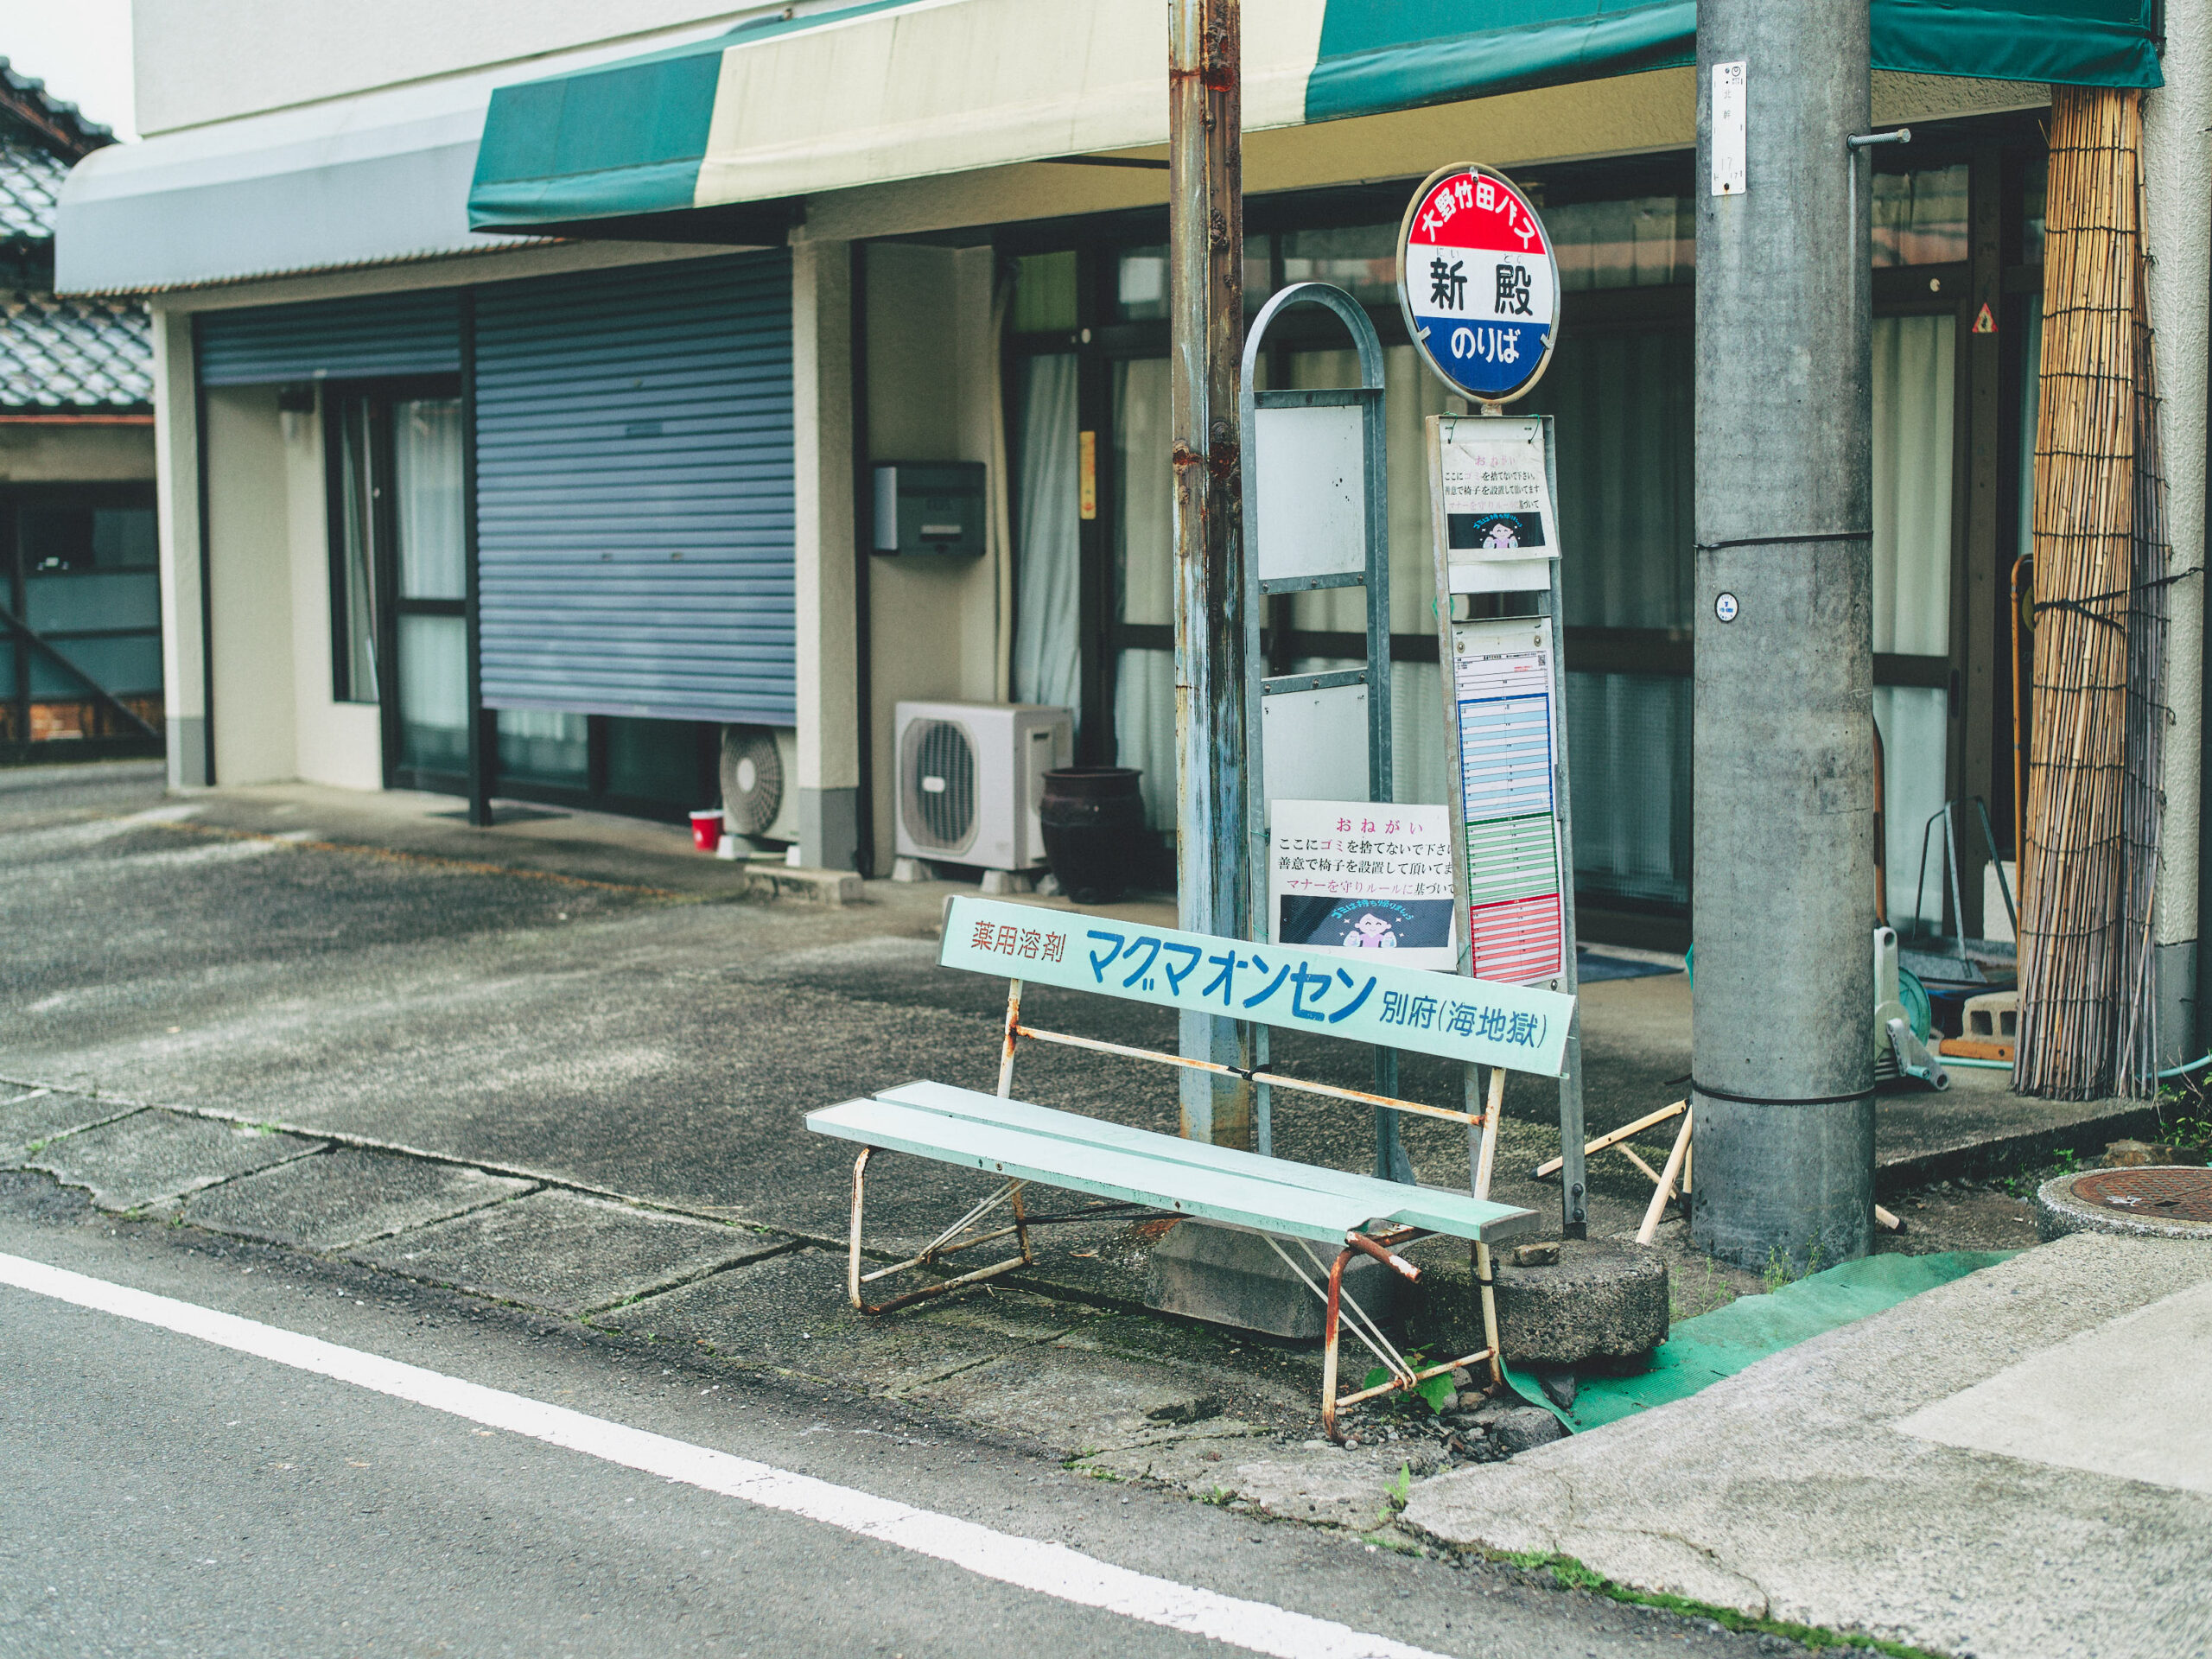 バス停とベンチ。